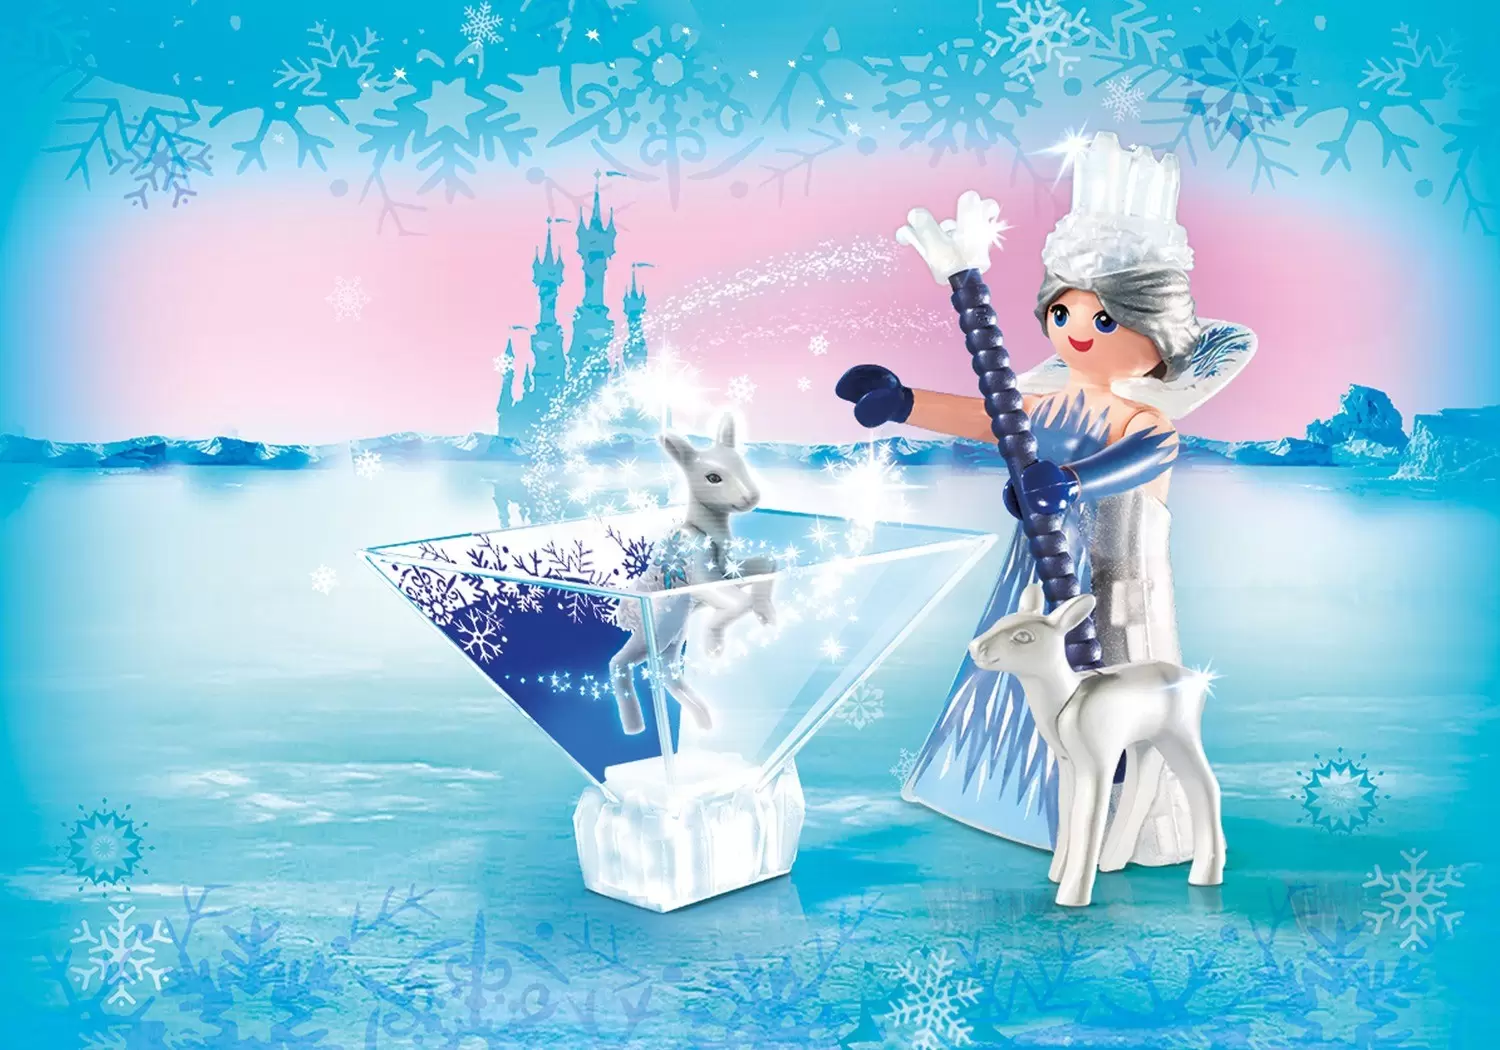 Playmobil Princess - Princess Ice Crystal